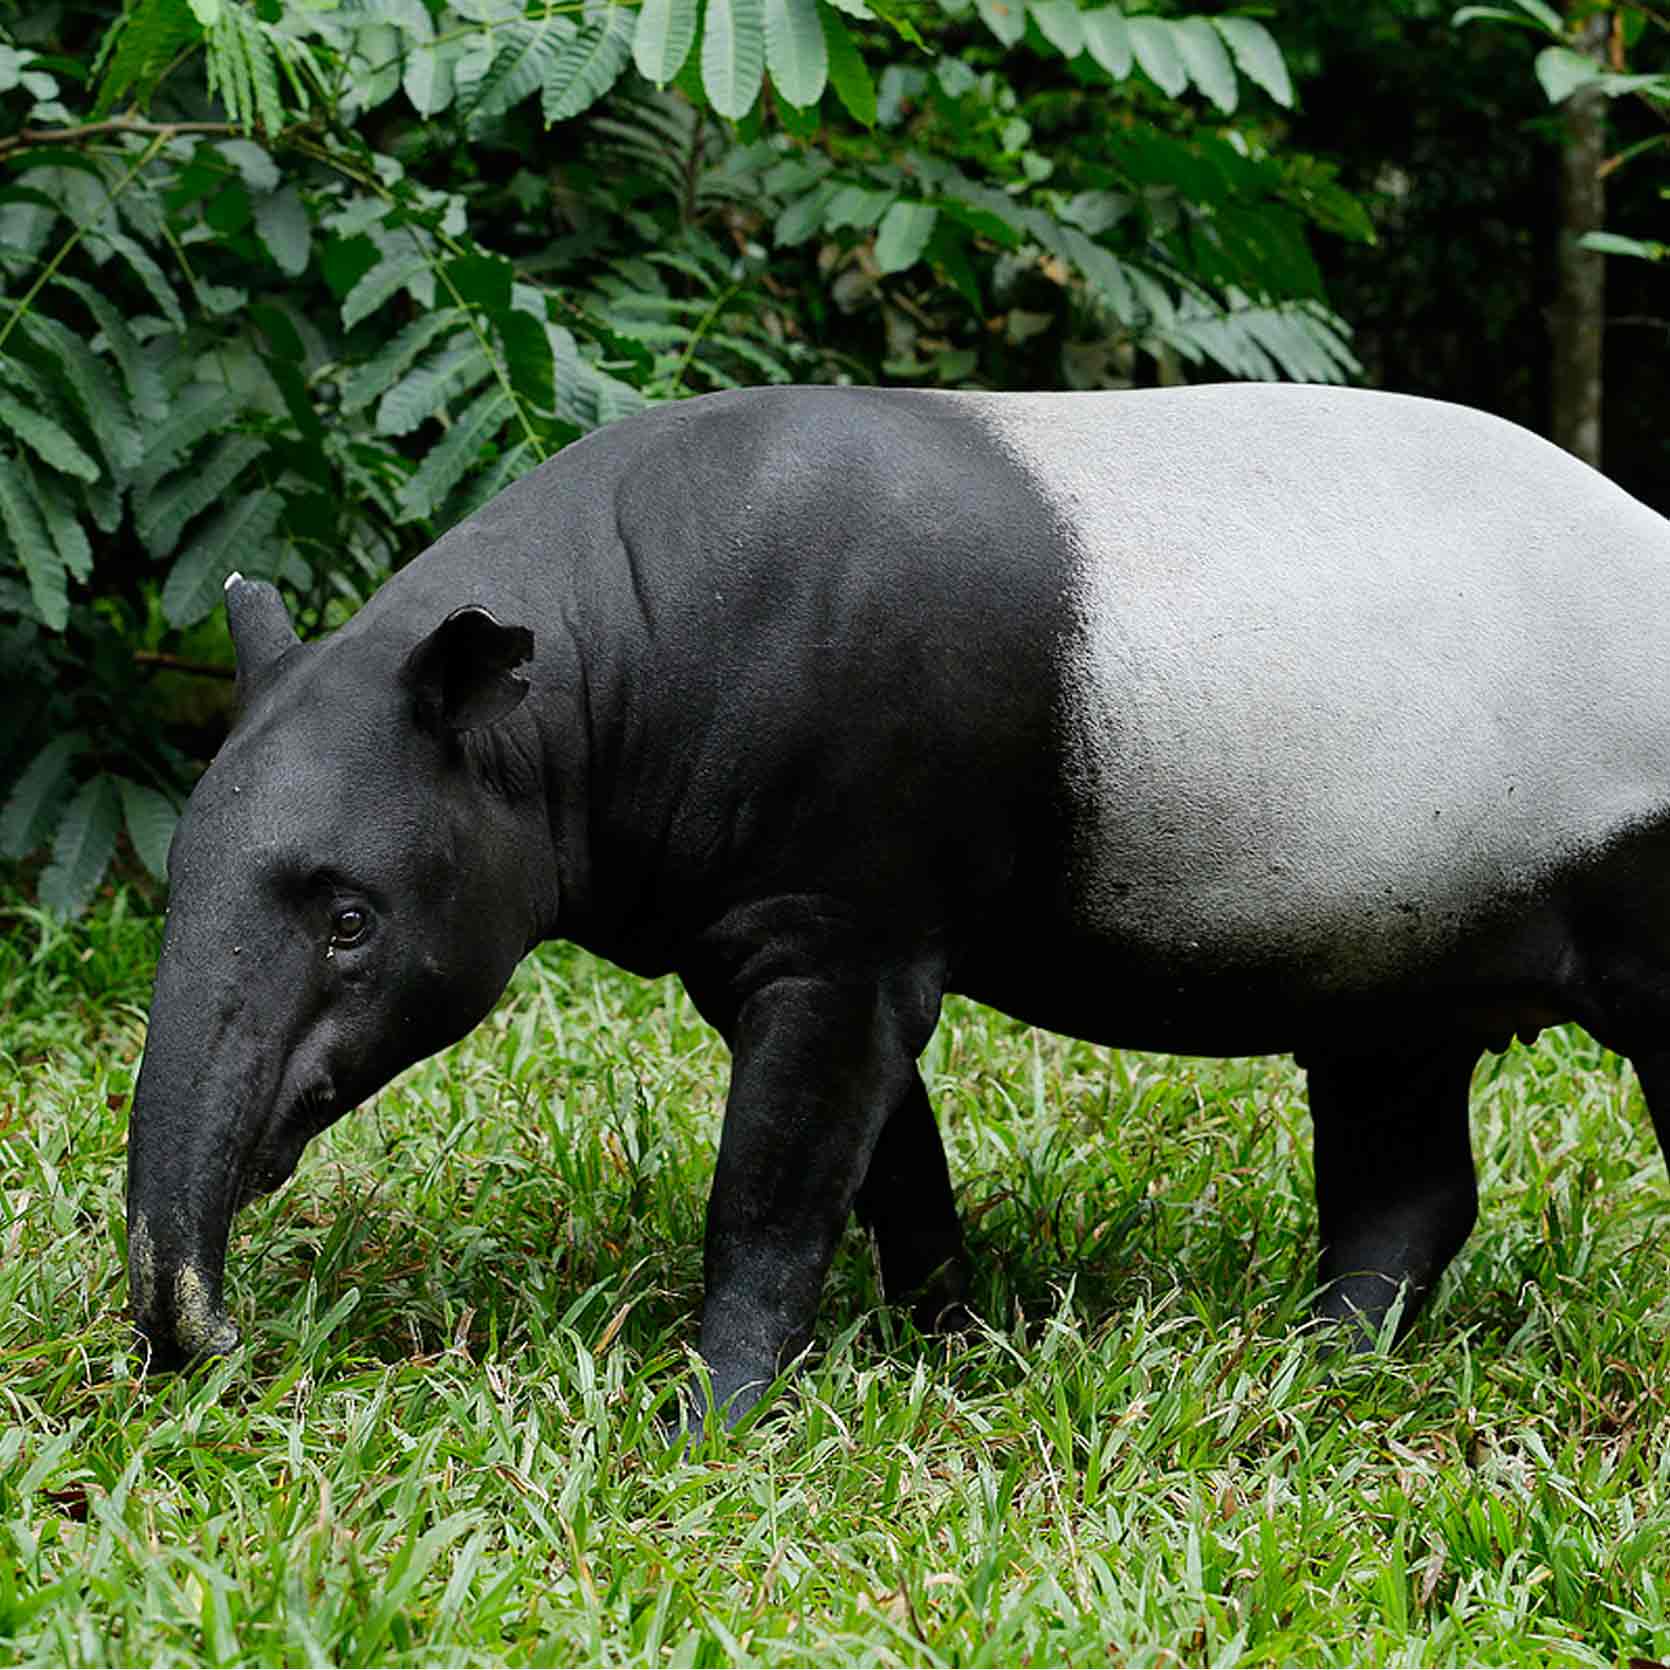 Название крупного млекопитающего. Андский тапир. Чепрачный тапир. Непарнокопытные тапиры. Суматранский тапир.